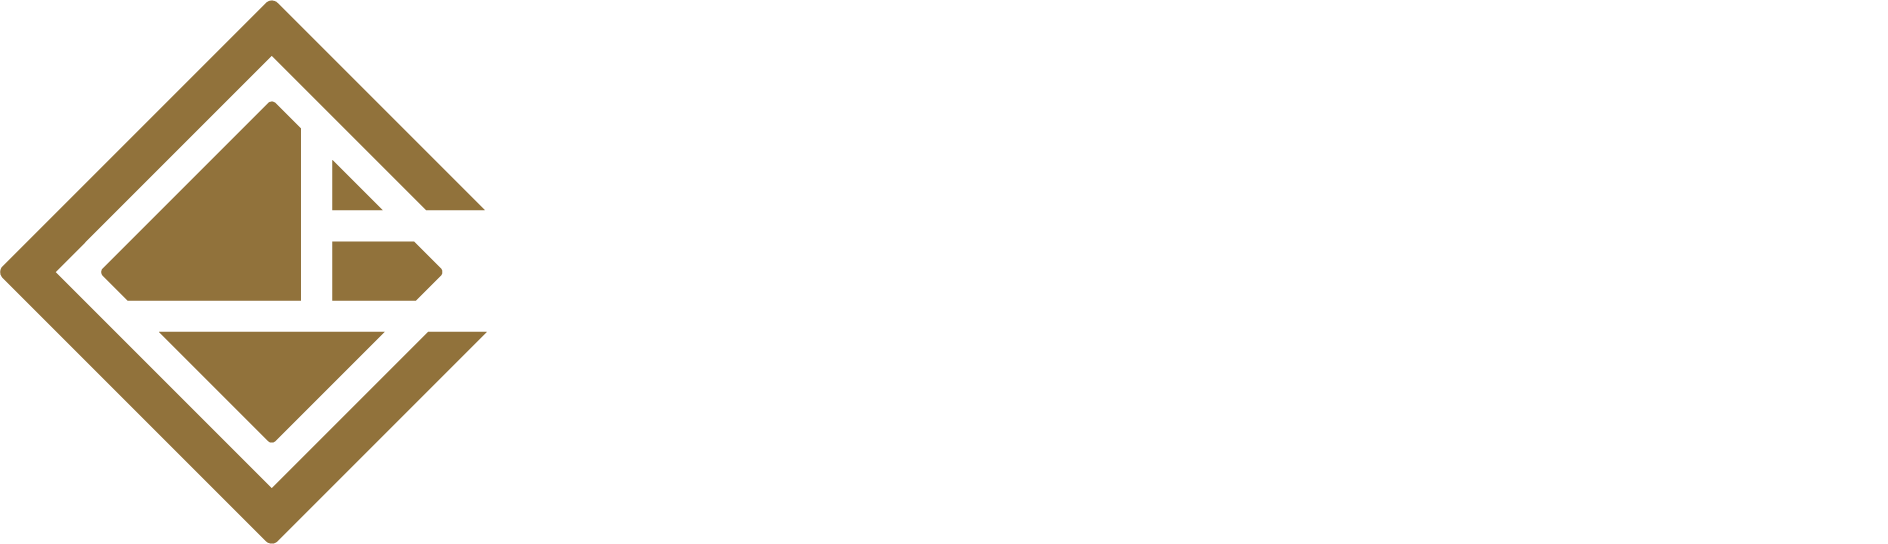 ARTCO logo